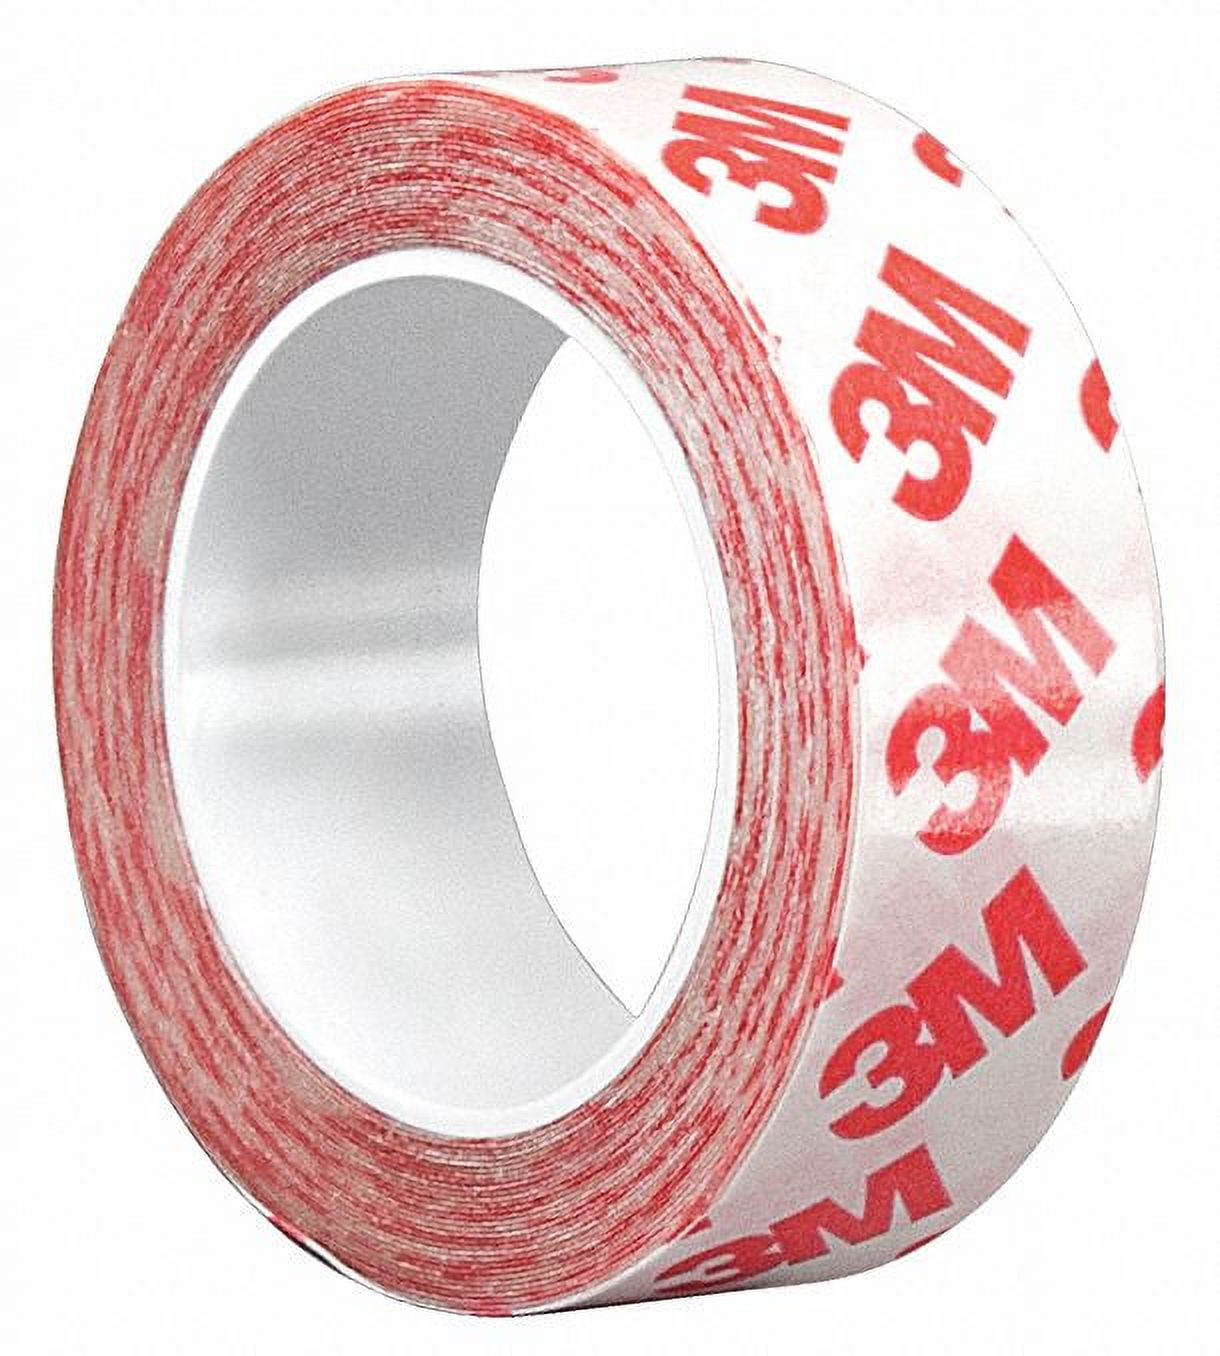 Seam Sealing Tape, Fabric Repair Tape Waterproof Length 30 Meters